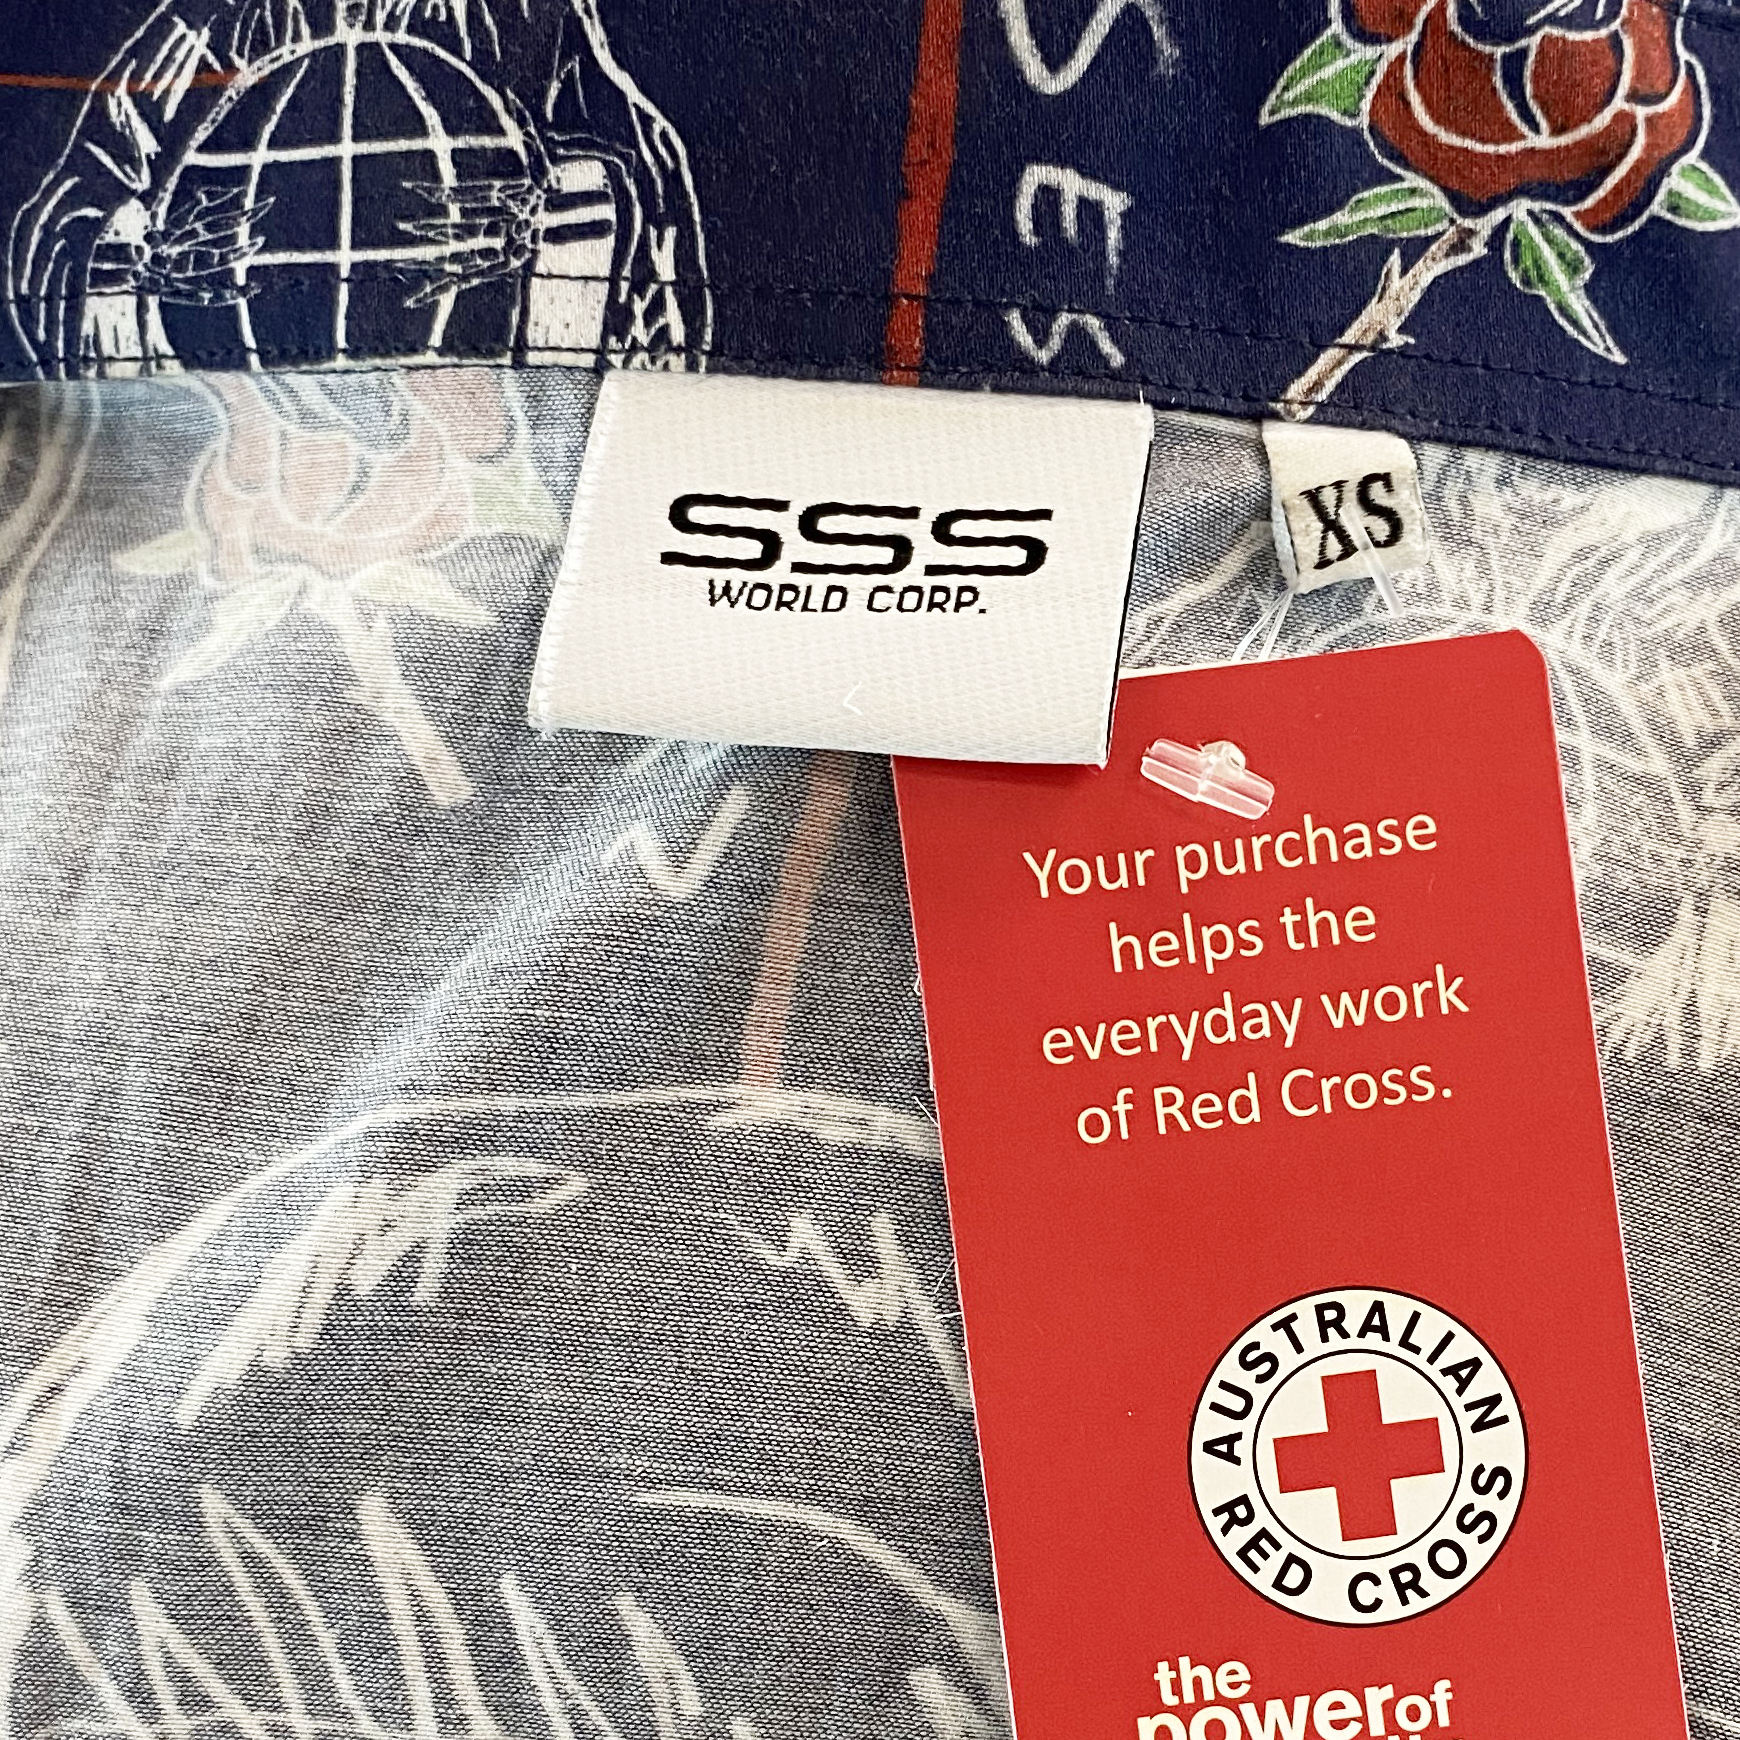 SSS World Corp Print Short-Sleeved Shirt